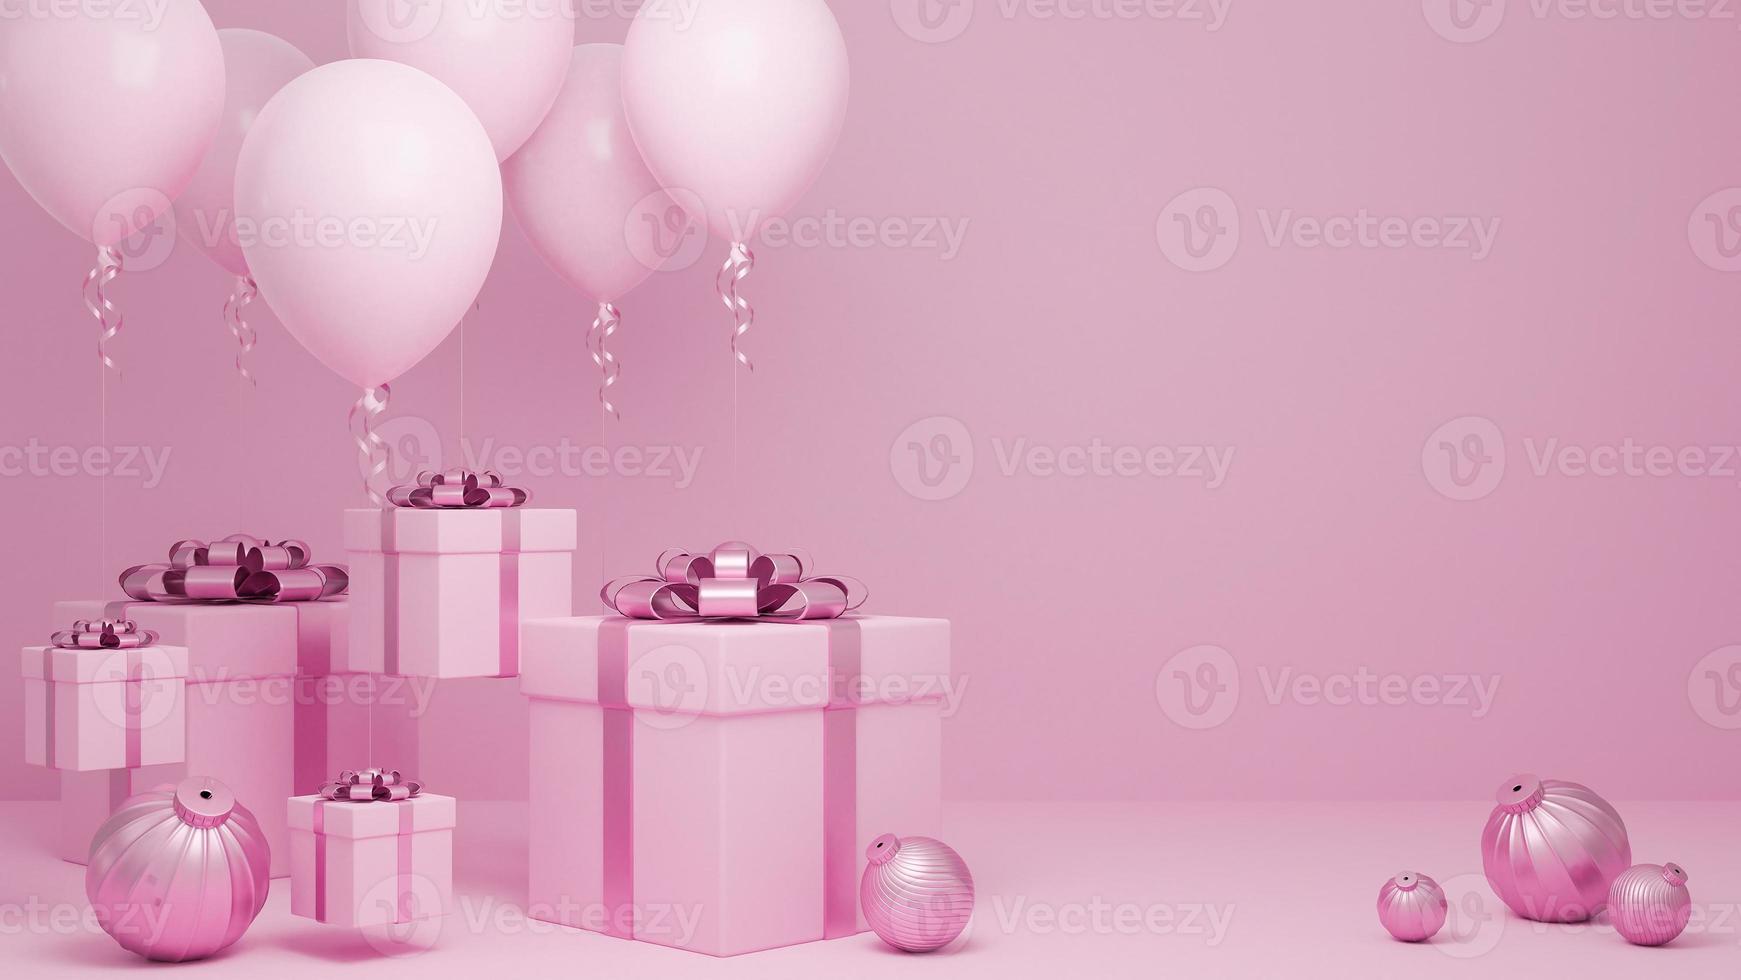 de nombreux coffrets cadeaux volent dans l'air avec ballon et ornement fond pastel rose., concept de fond de noël et bonne année., modèle 3d et illustration. photo